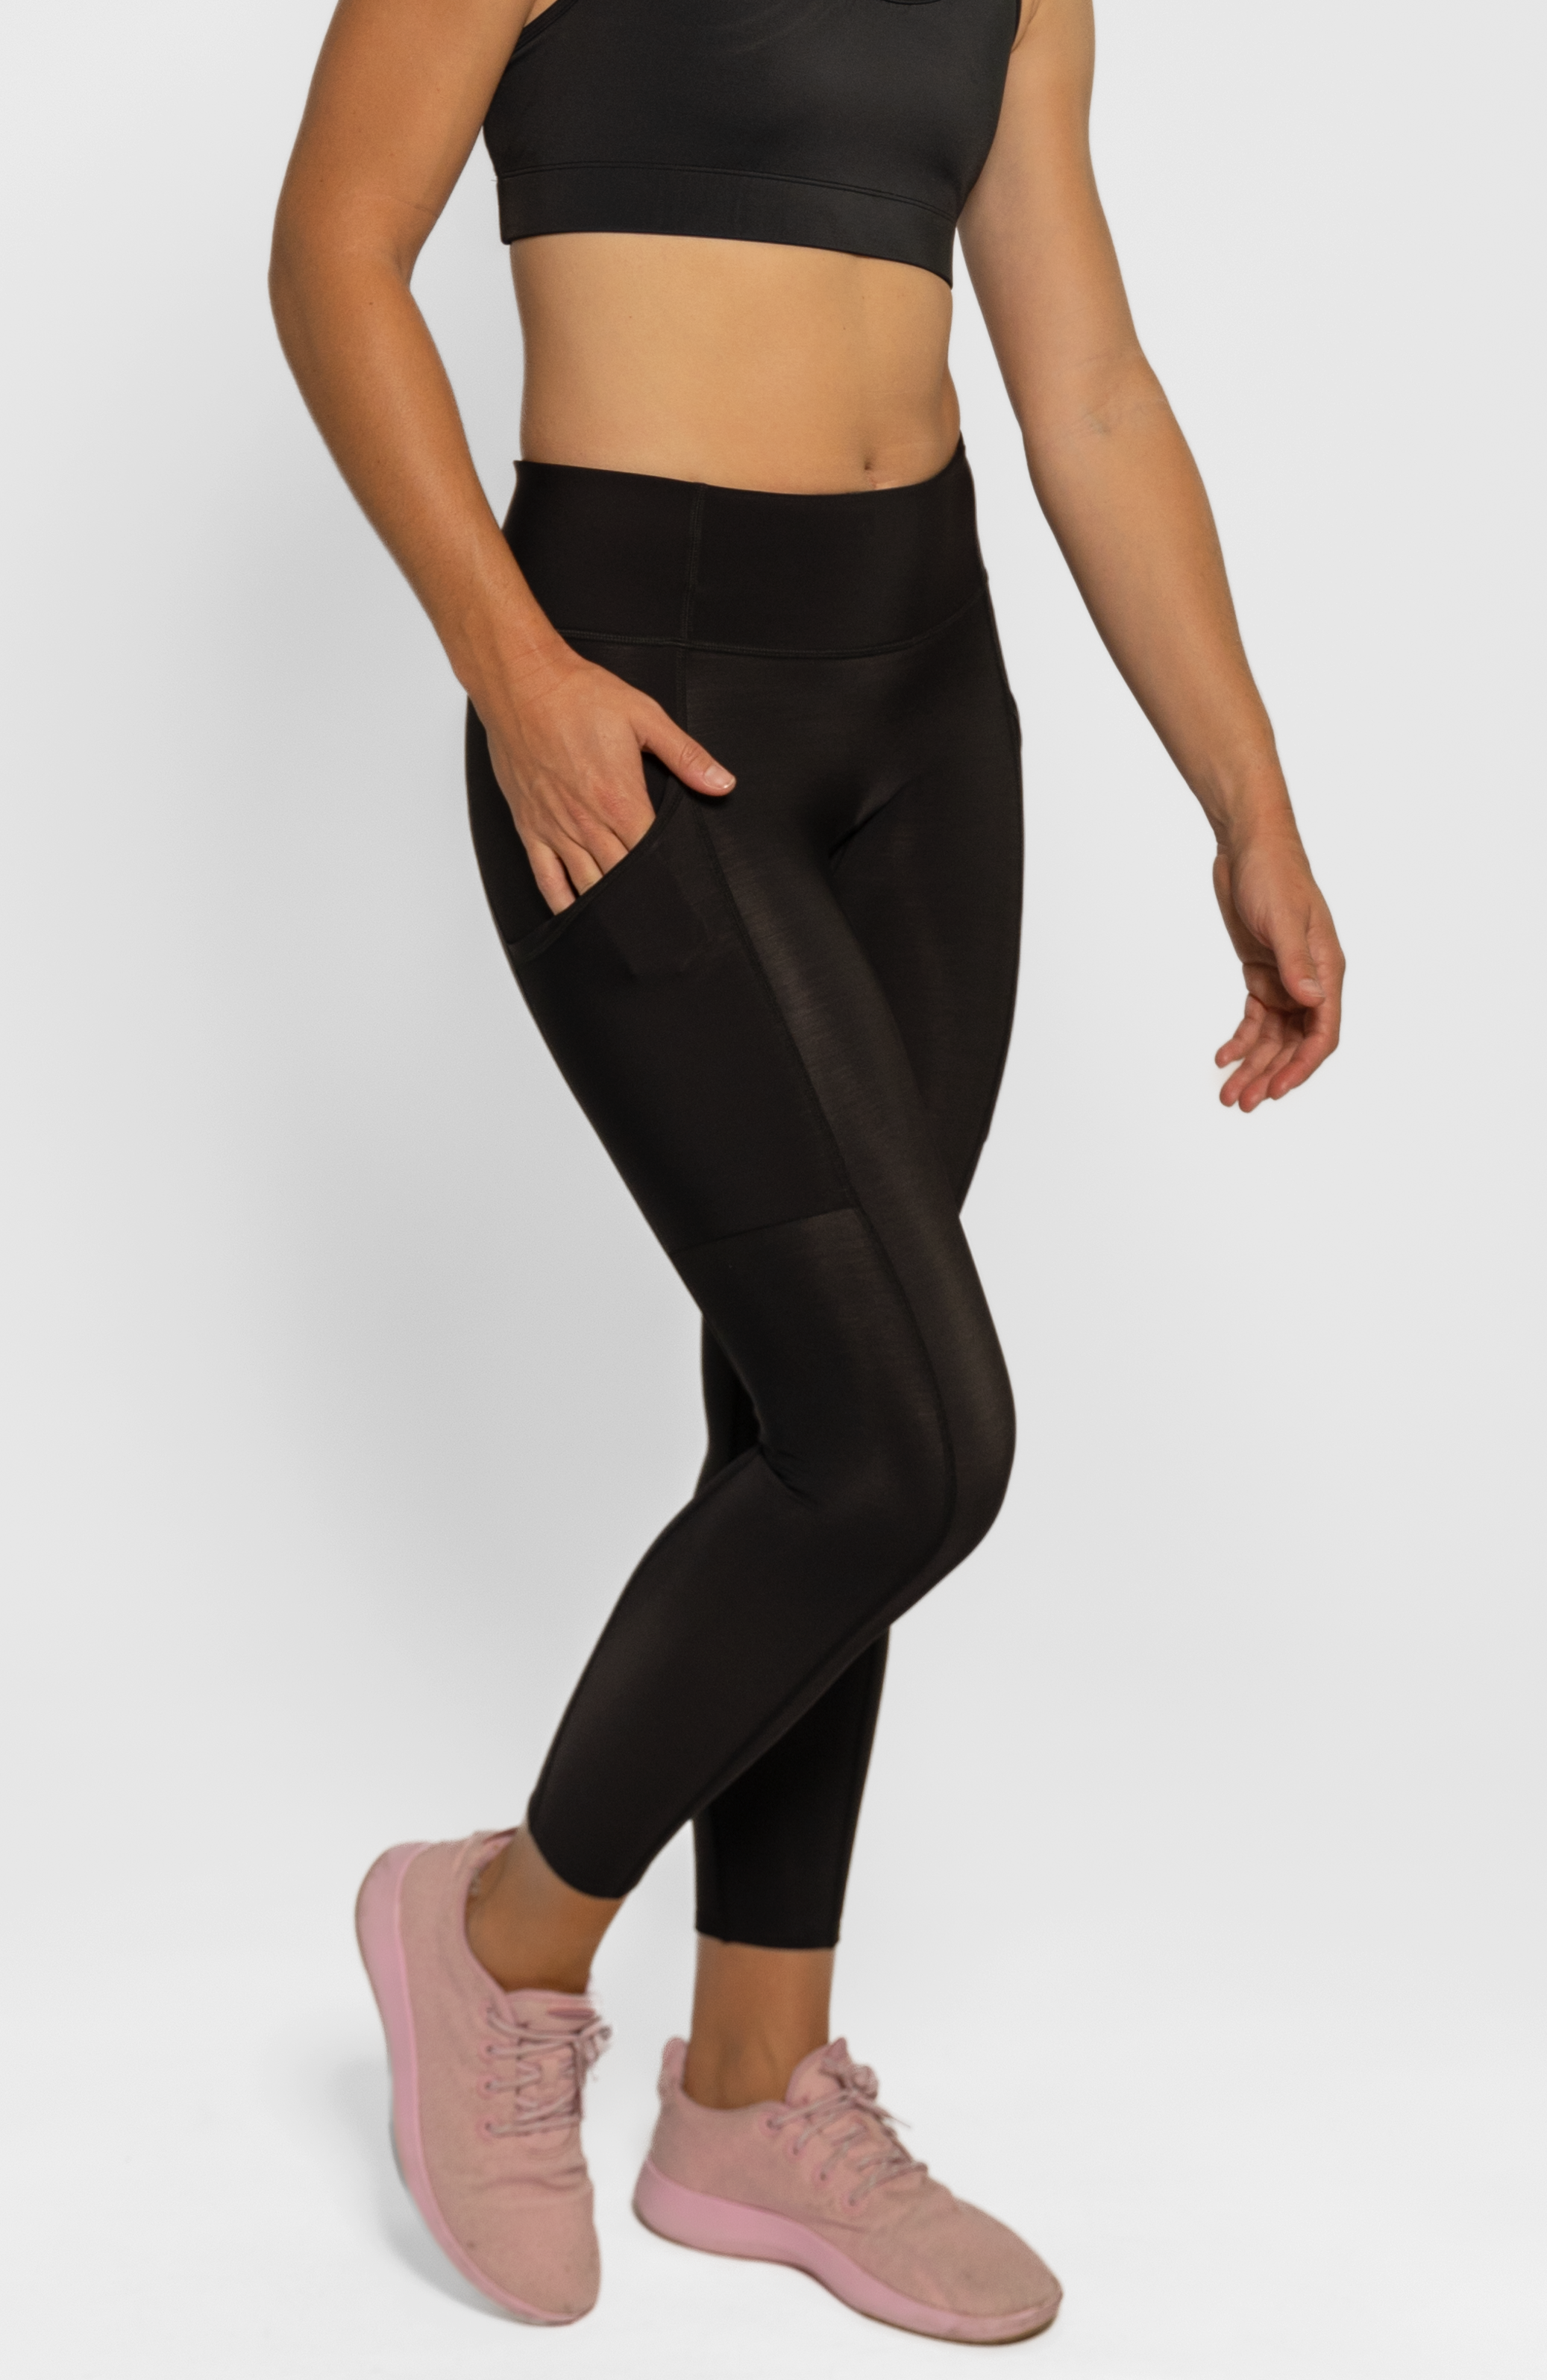 Lululemon Women's Running Capri Leggings w/ Pockets Size 6 Zipper Pocket -  Black